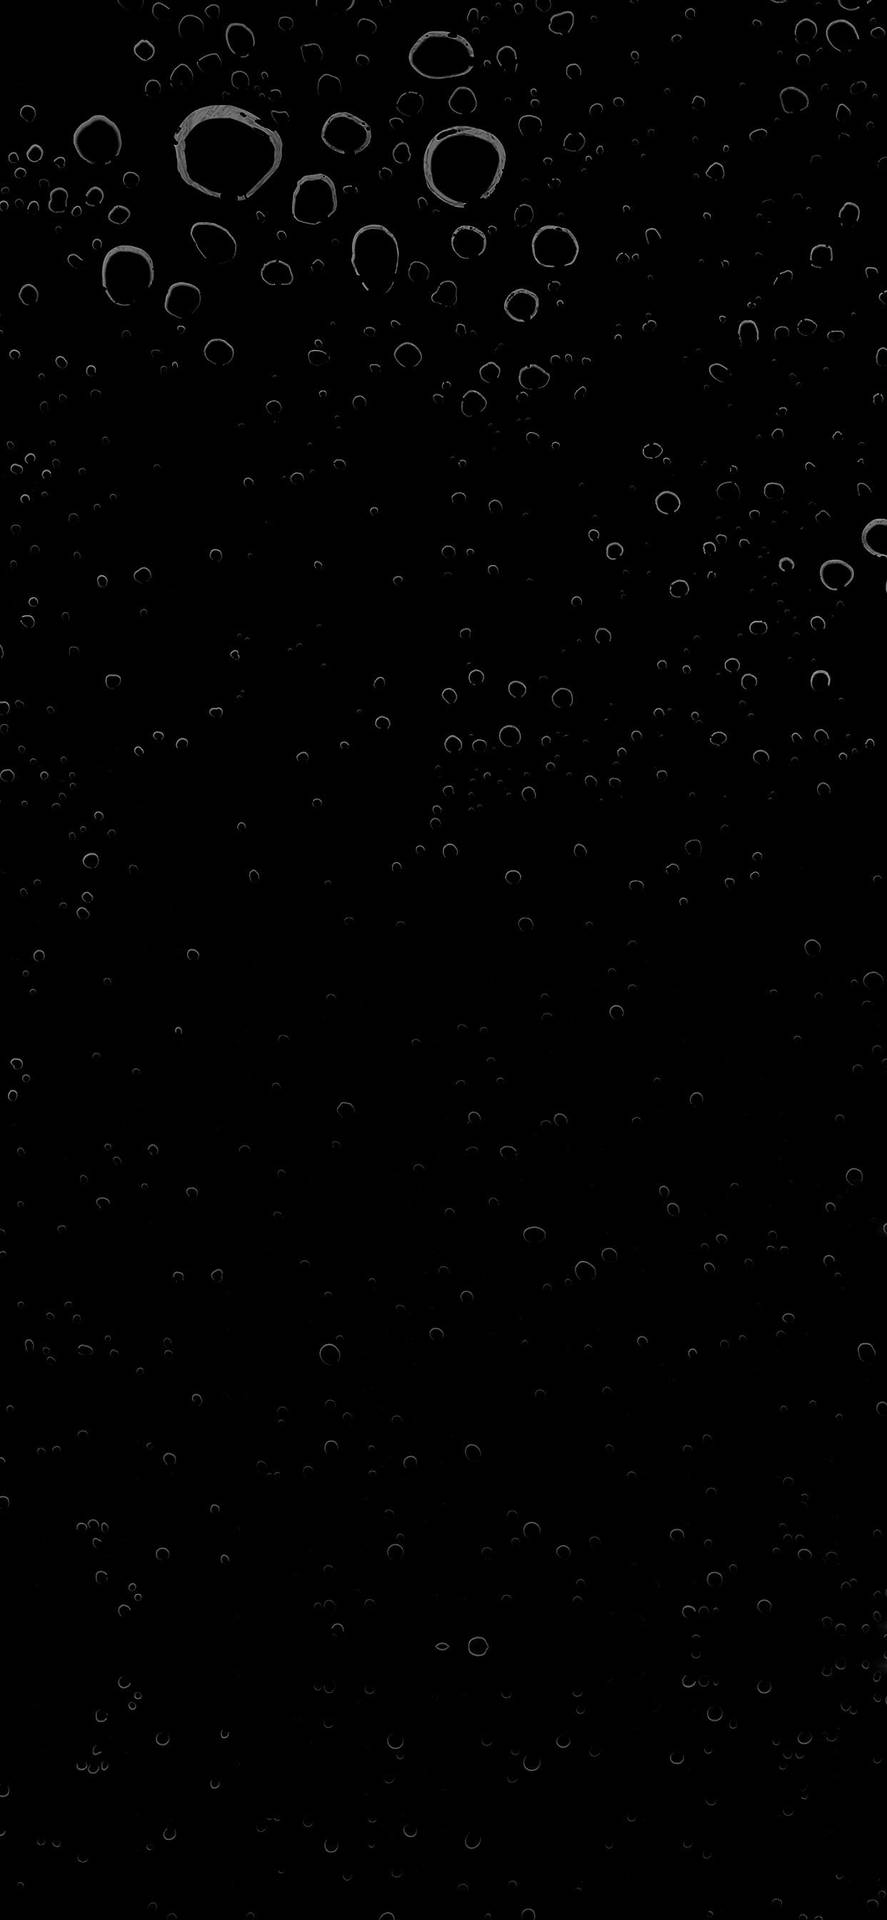 Dark Mode Air Bubbles